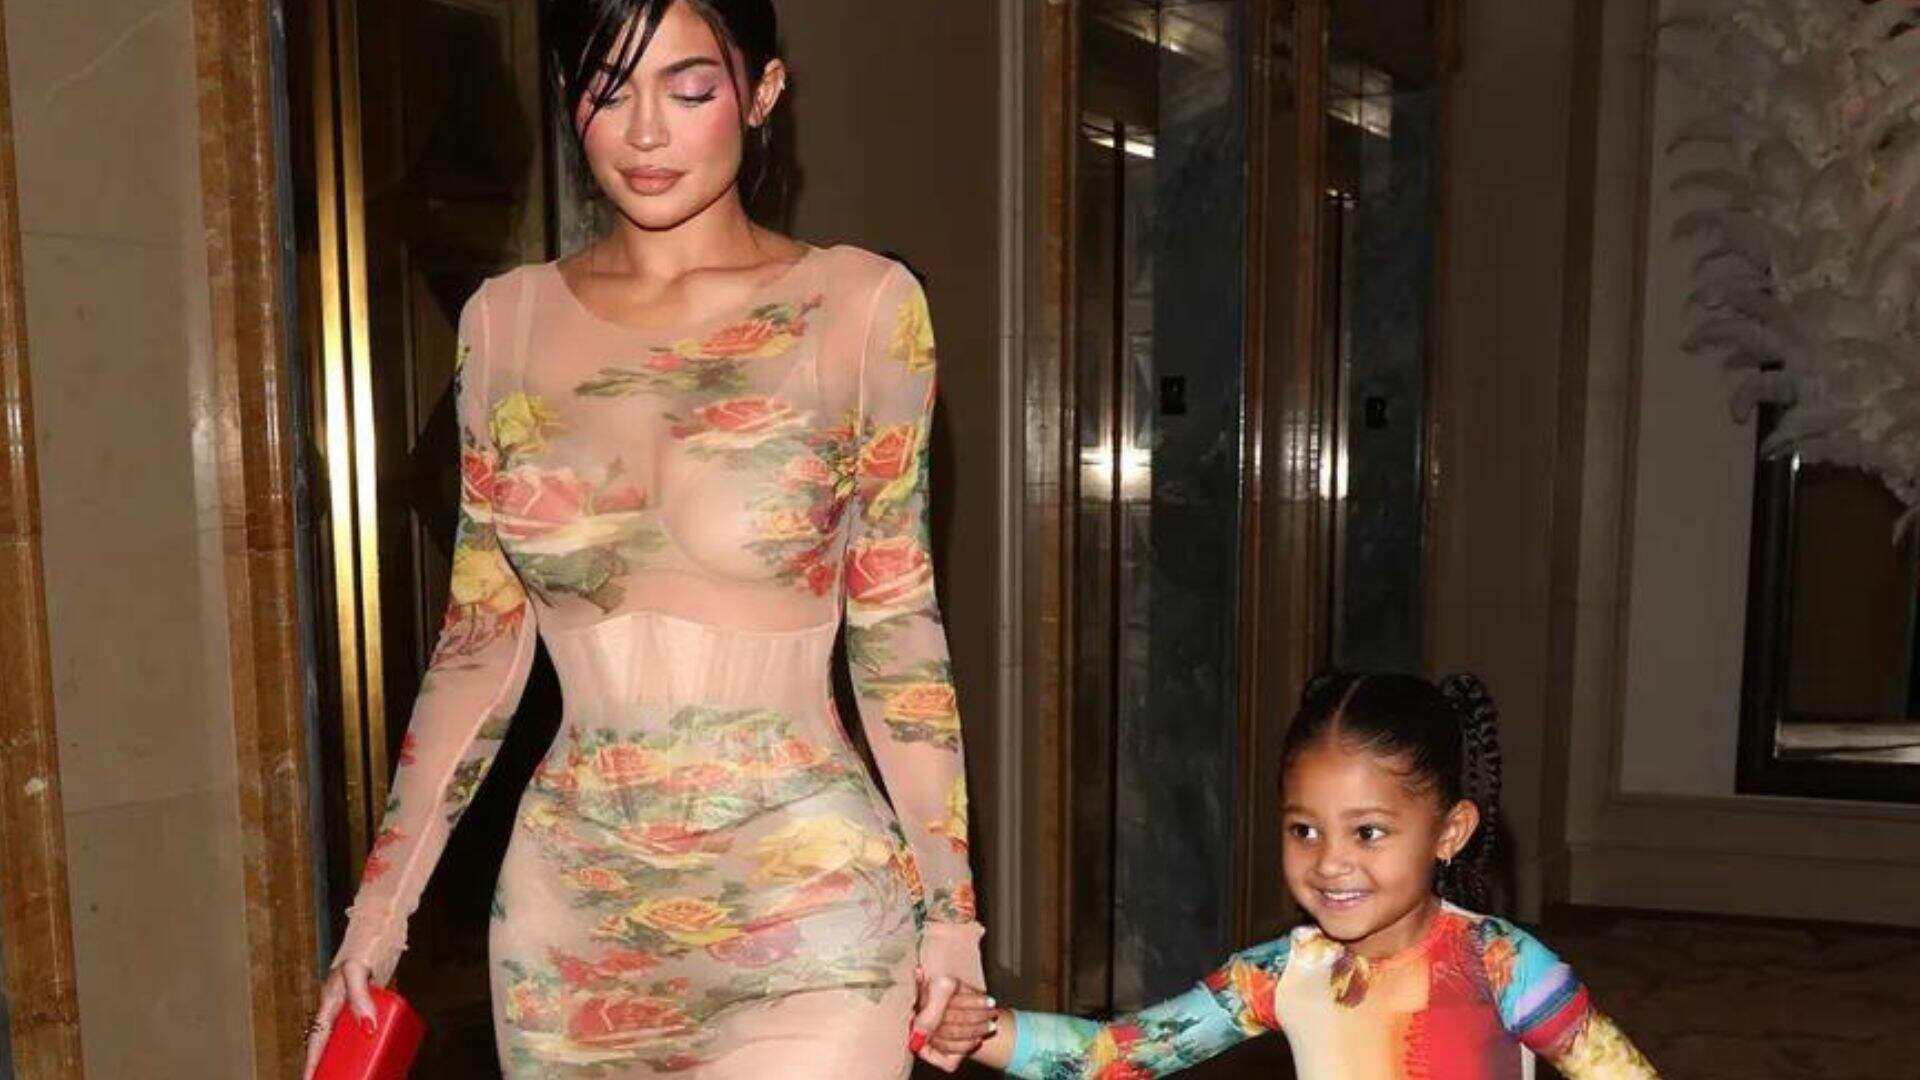 Acompanhada da filha, Kylie Jenner elege vestido transparente e florido para evento - Metropolitana FM